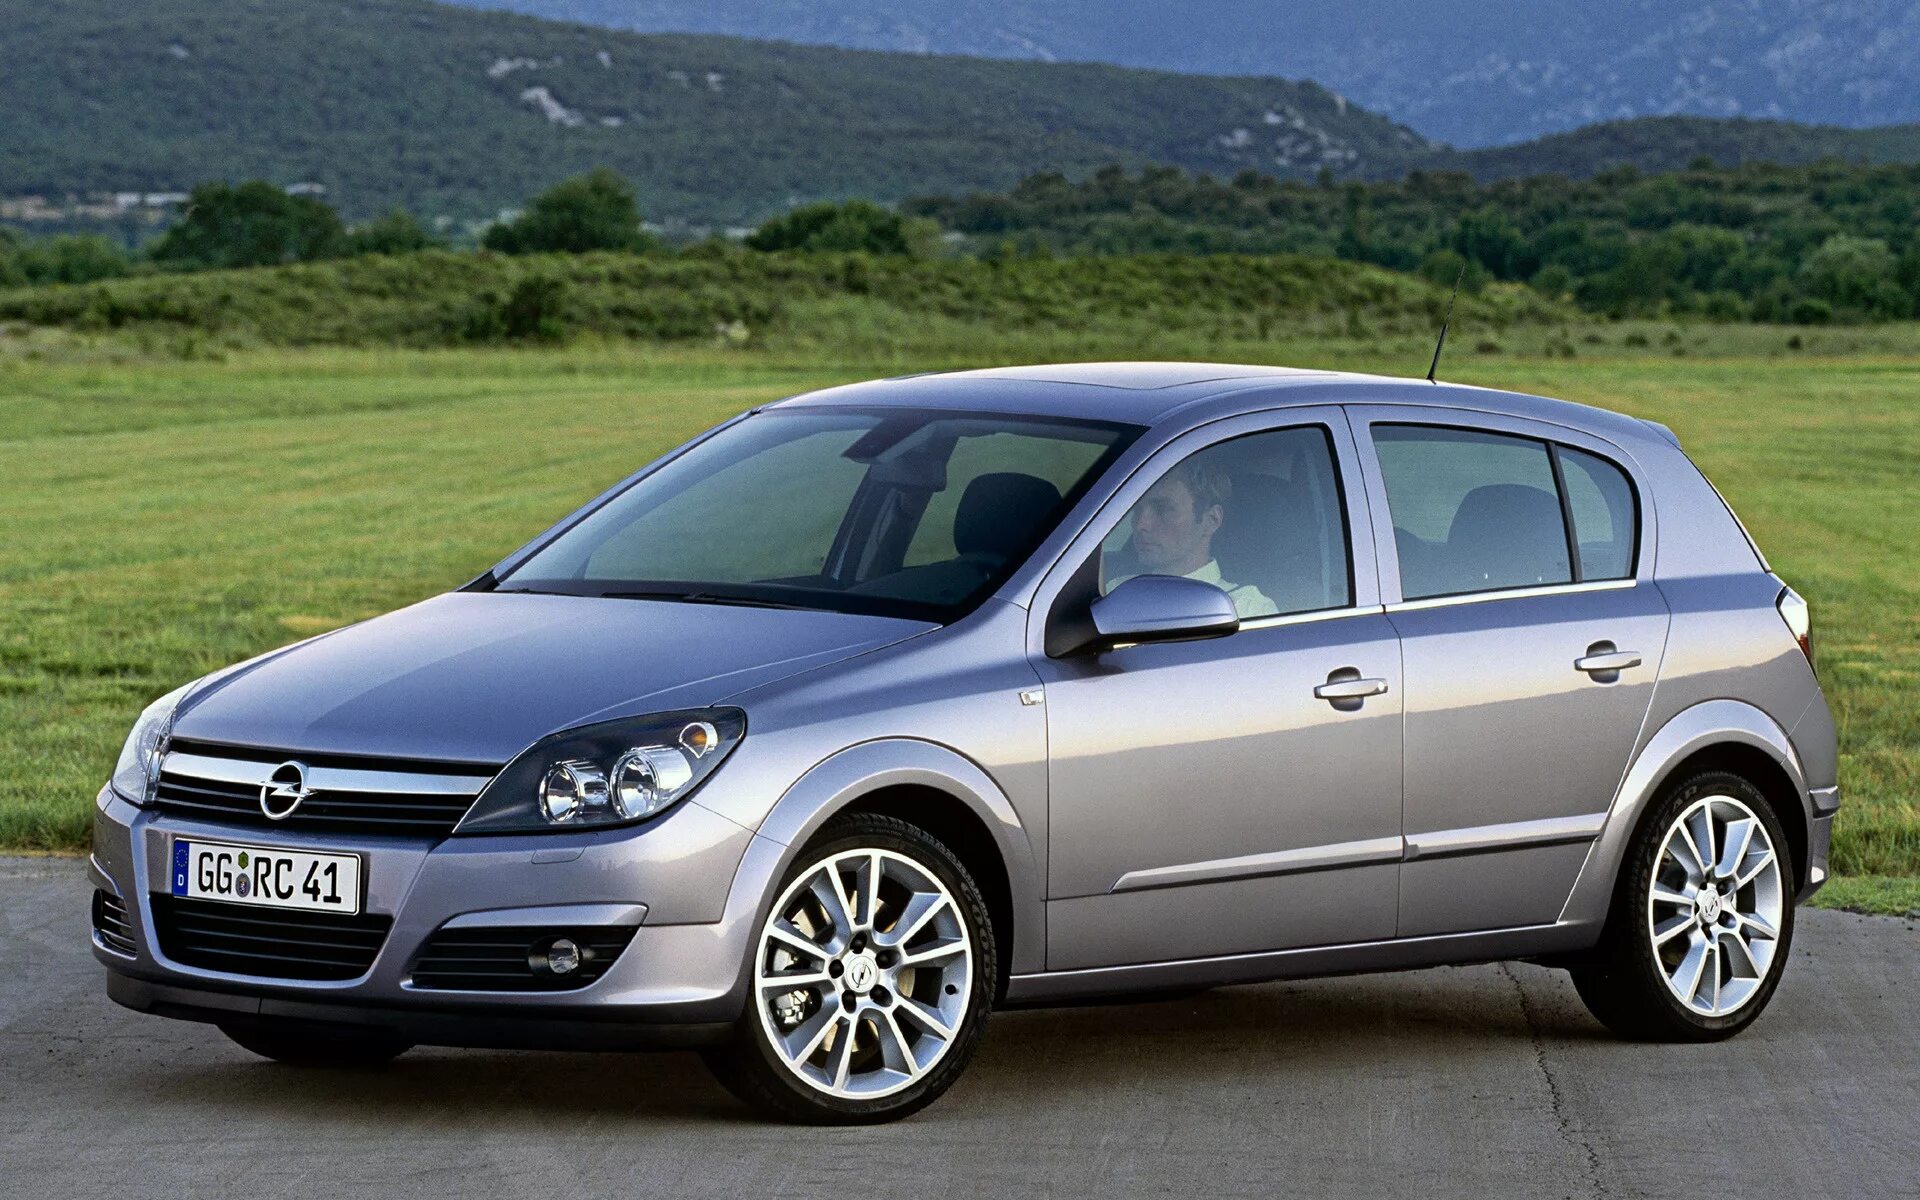 Opel Astra 2004. Opel Astra h 2007. Opel Astra h 2004.